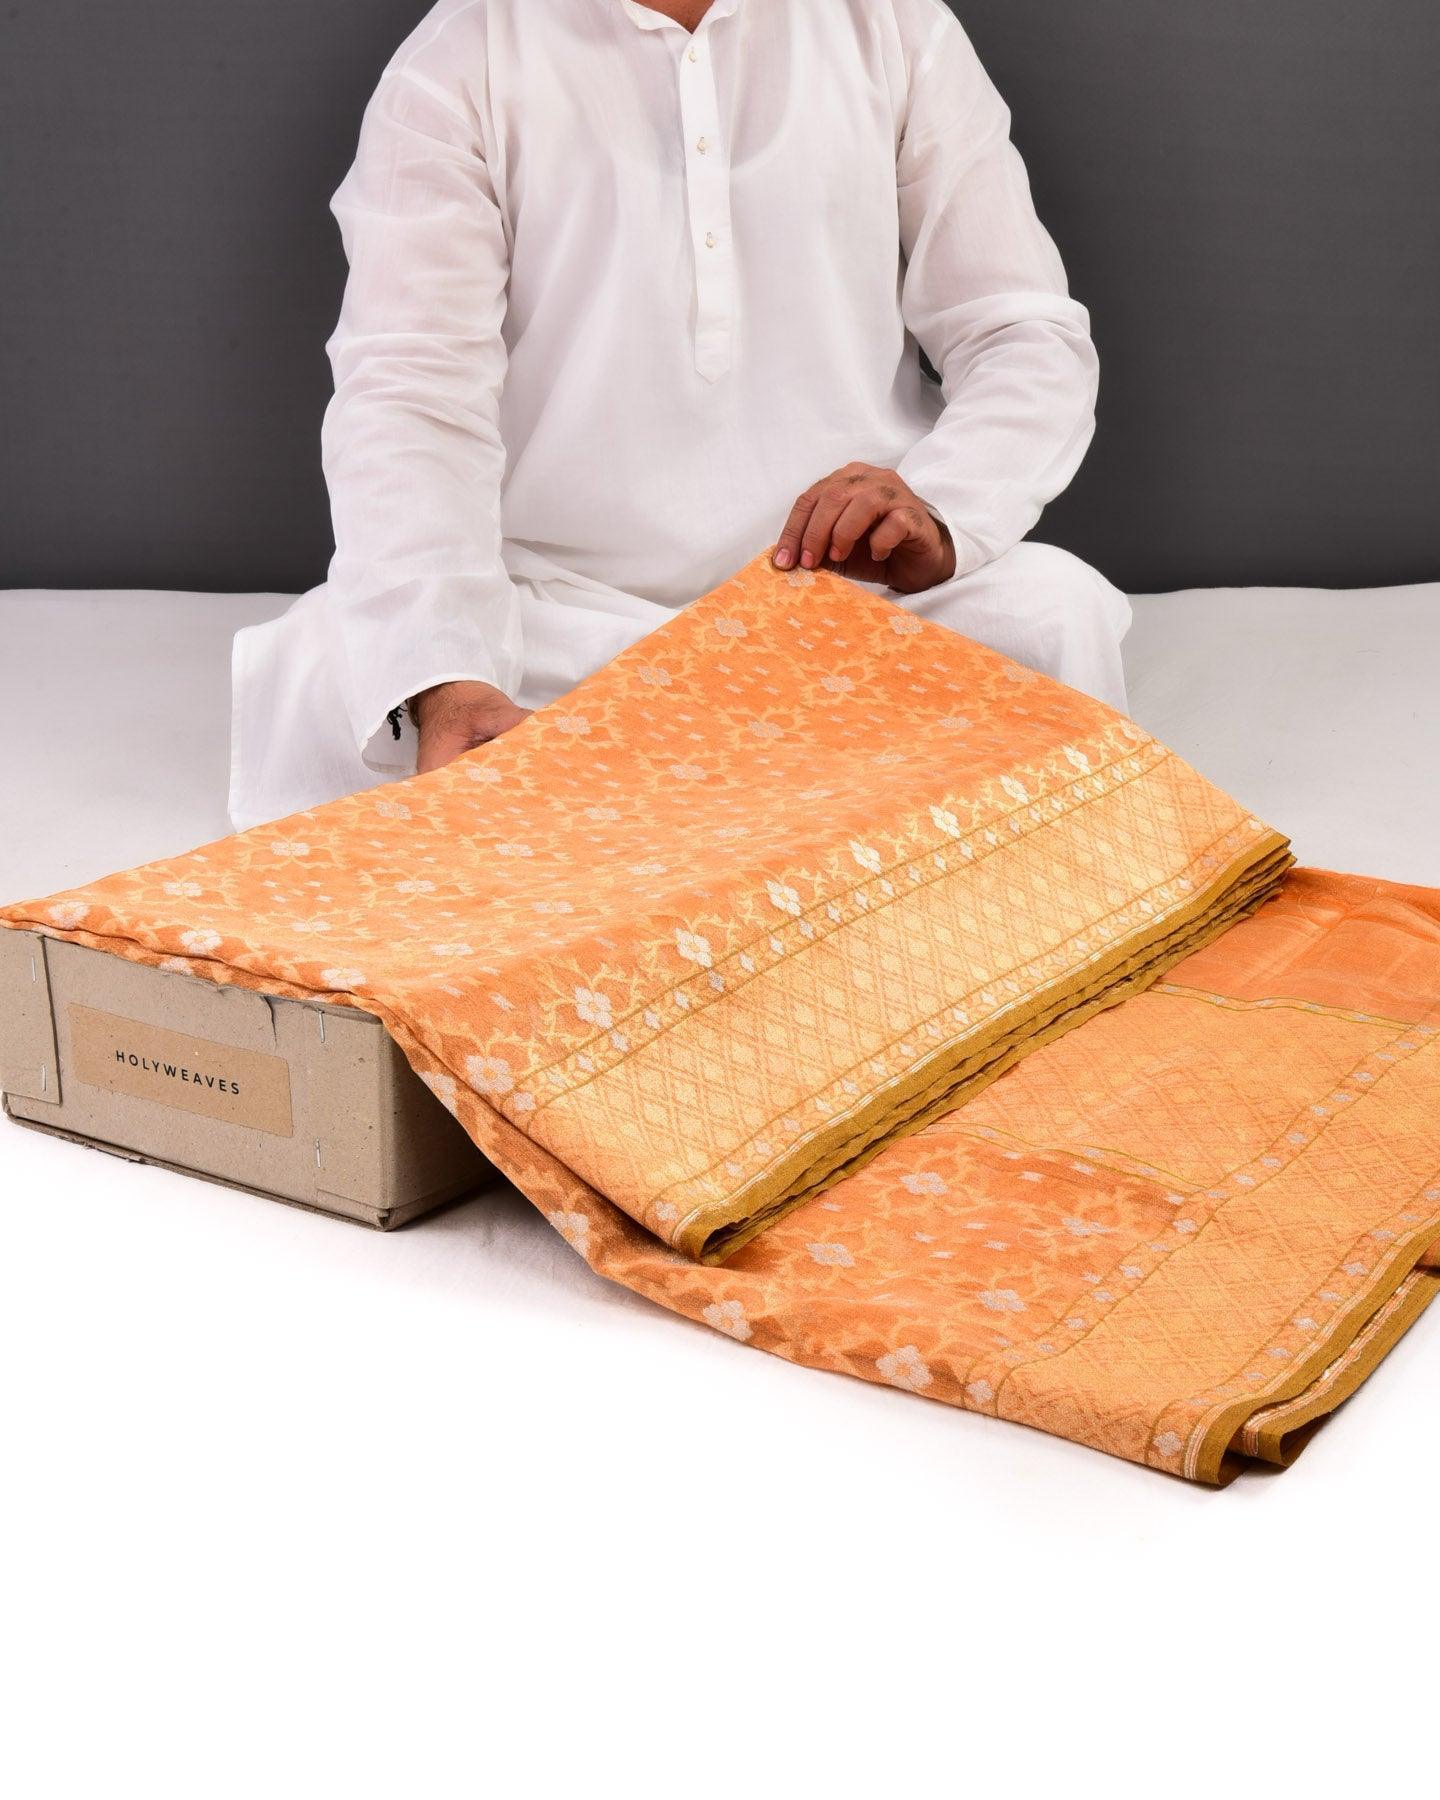 Orange Banarasi Alfi Cutwork Brocade Handwoven Kora Tissue Saree - By HolyWeaves, Benares